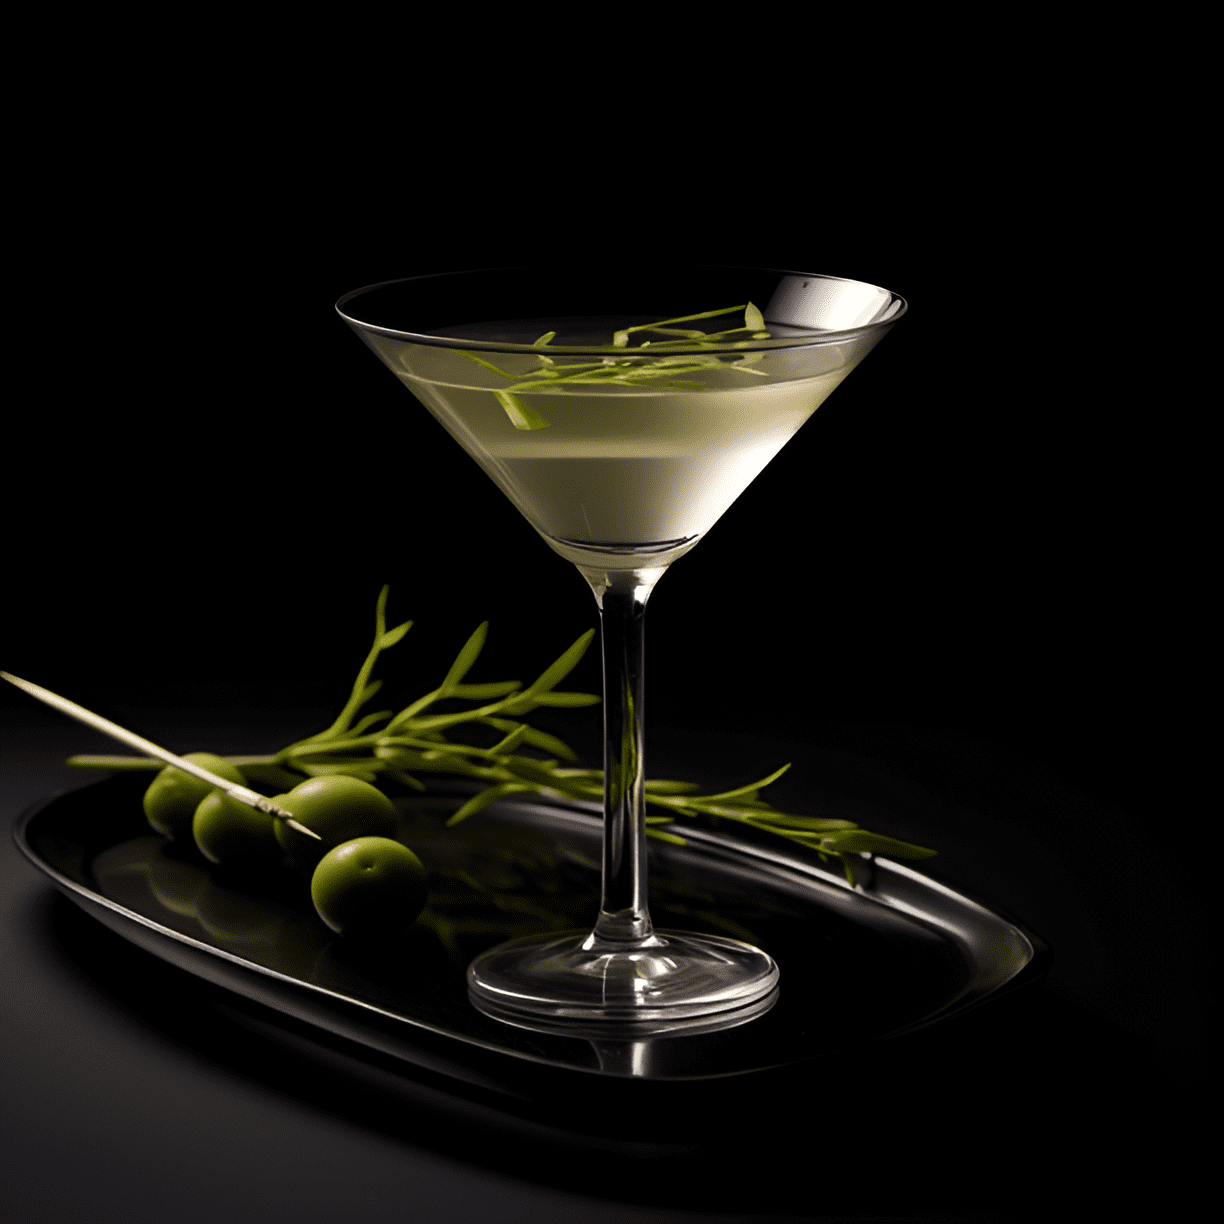 Sake Martini Cóctel Receta - El Sake Martini es un cóctel delicado, suave y ligeramente floral con un toque de dulzura. Es ligero y refrescante, con un sutil toque de umami del sake.